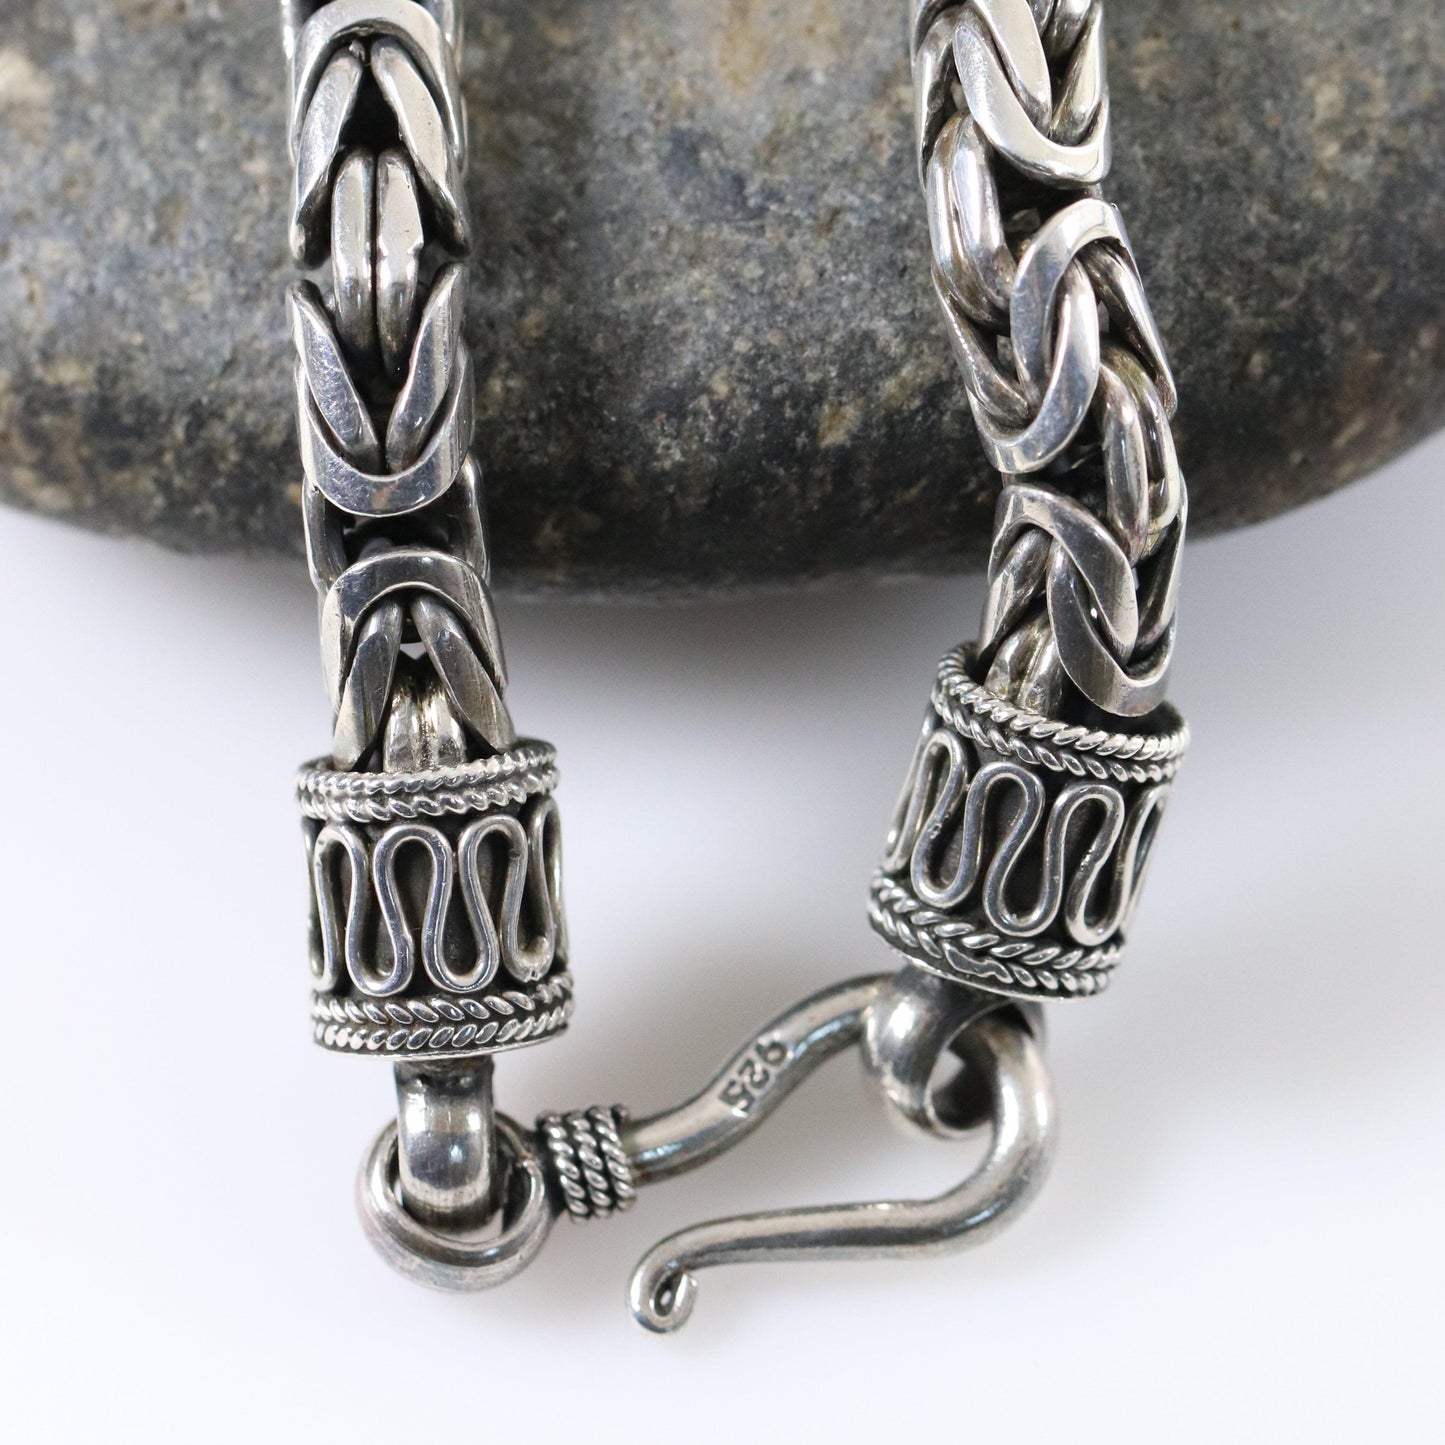 Vintage Silver Jewelry | Heavy Byzantine Link Chain Necklace - Carmel Fine Silver Jewelry